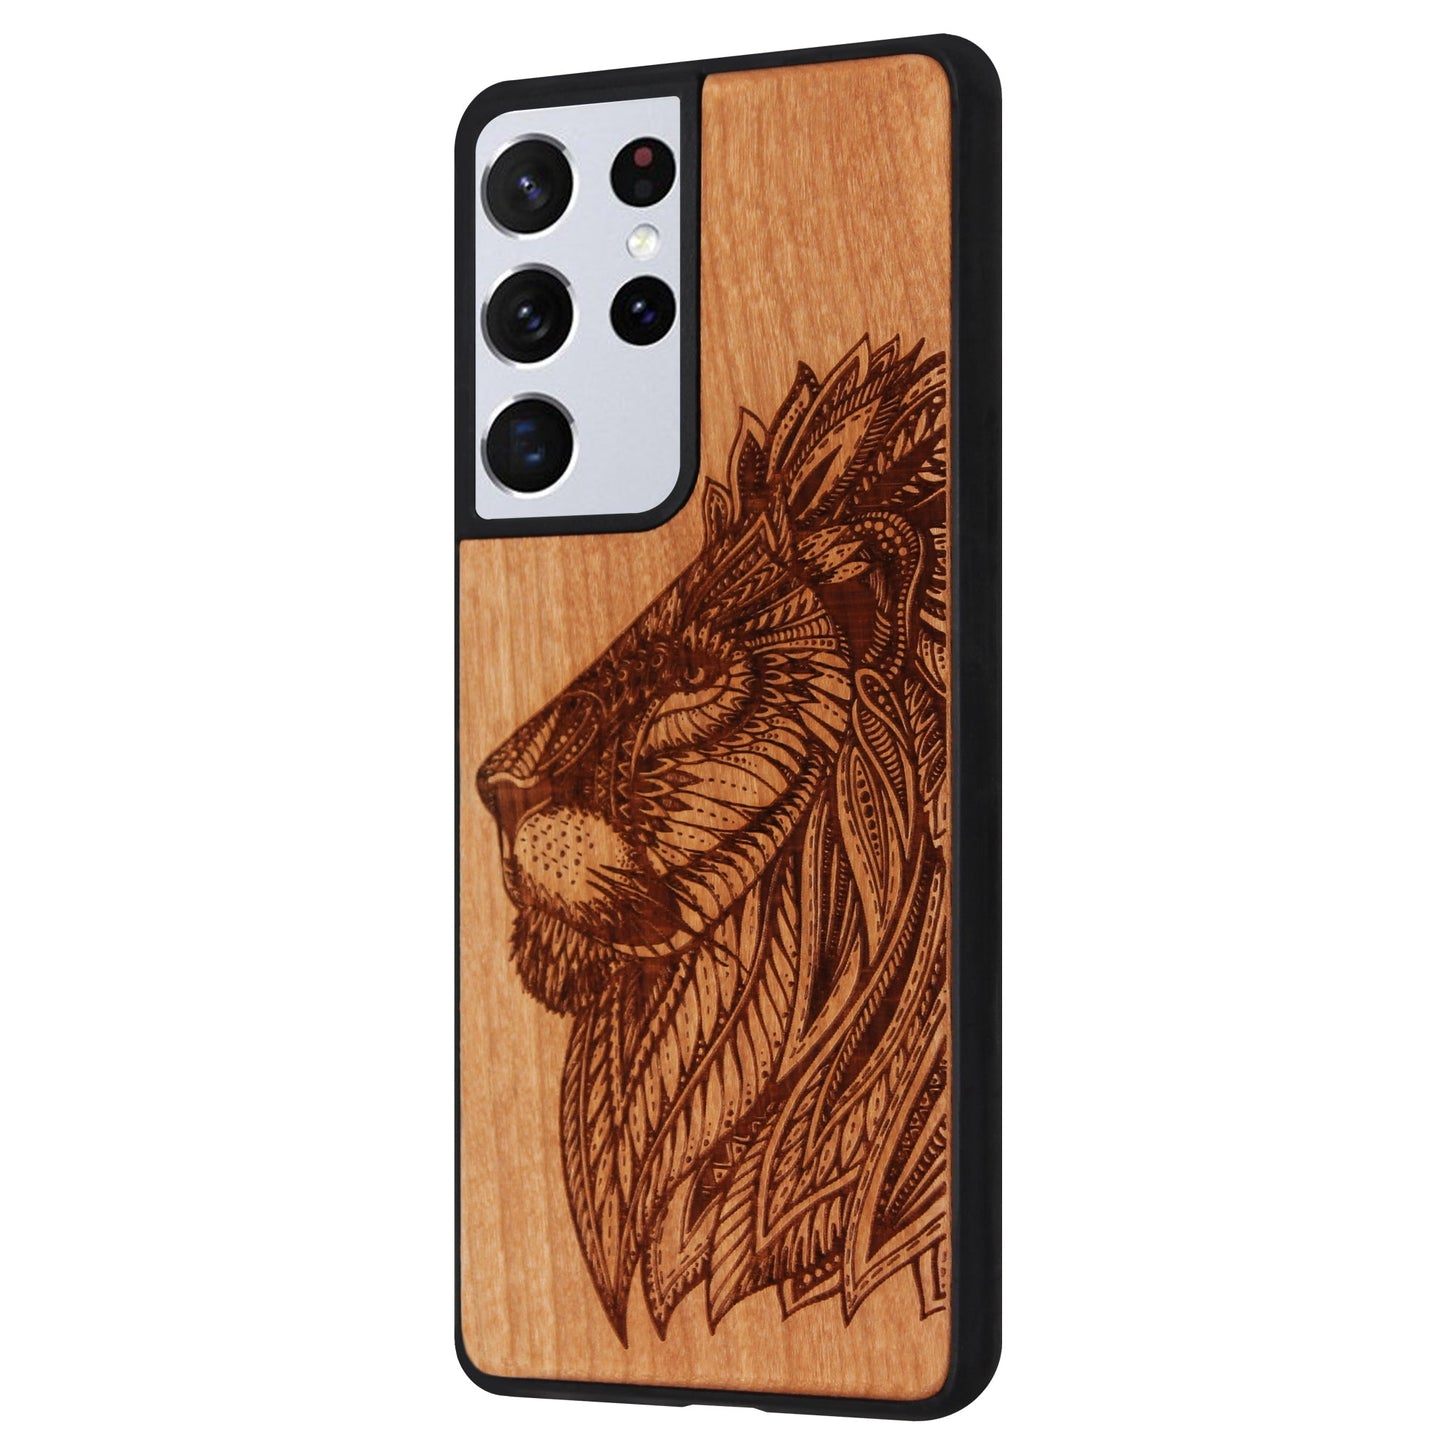 Coque Eden lion en bois de cerisier pour Samsung Galaxy S21 Ultra